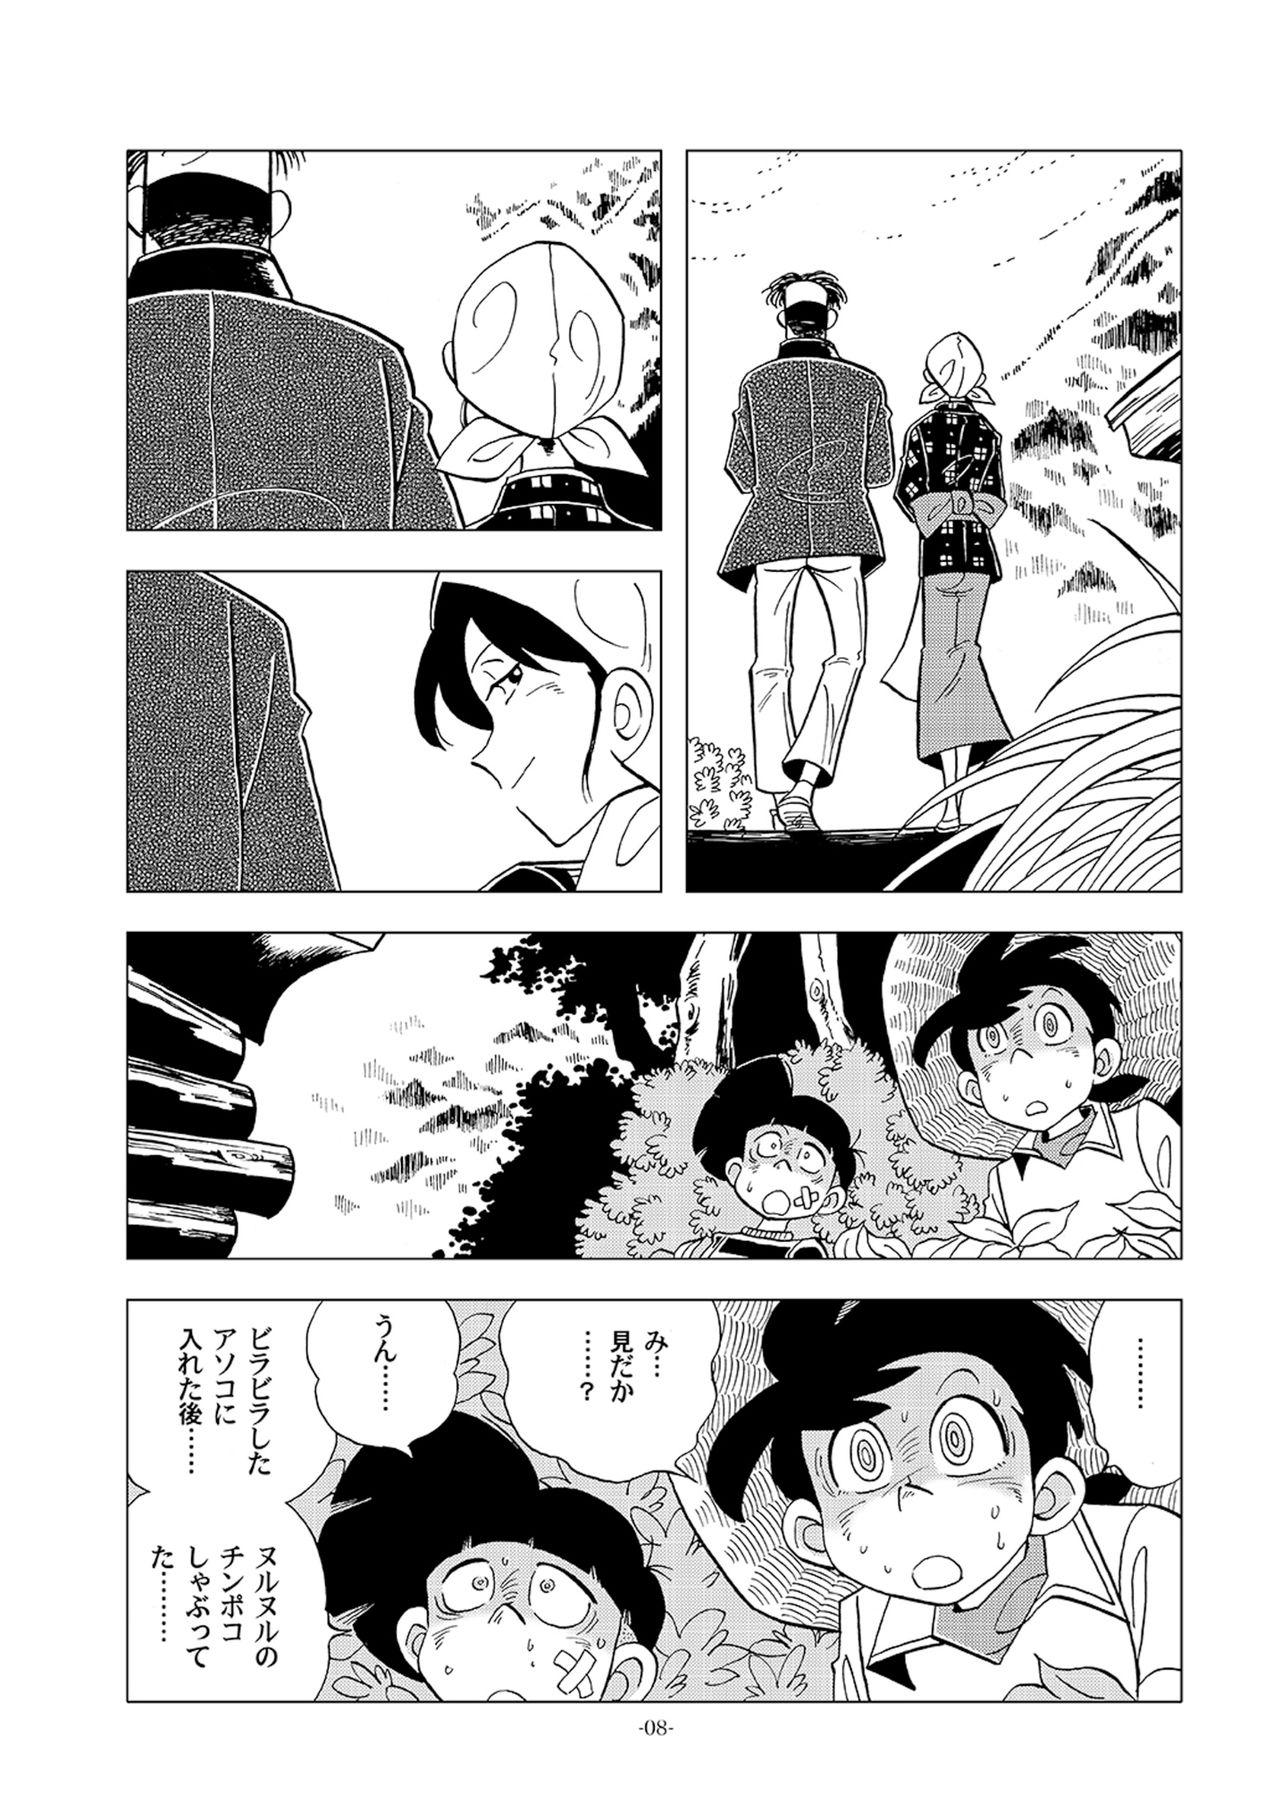 T Girl Dosu ke be nōson sai roku SP - Tsurikichi sanpei Cdzinha - Page 8